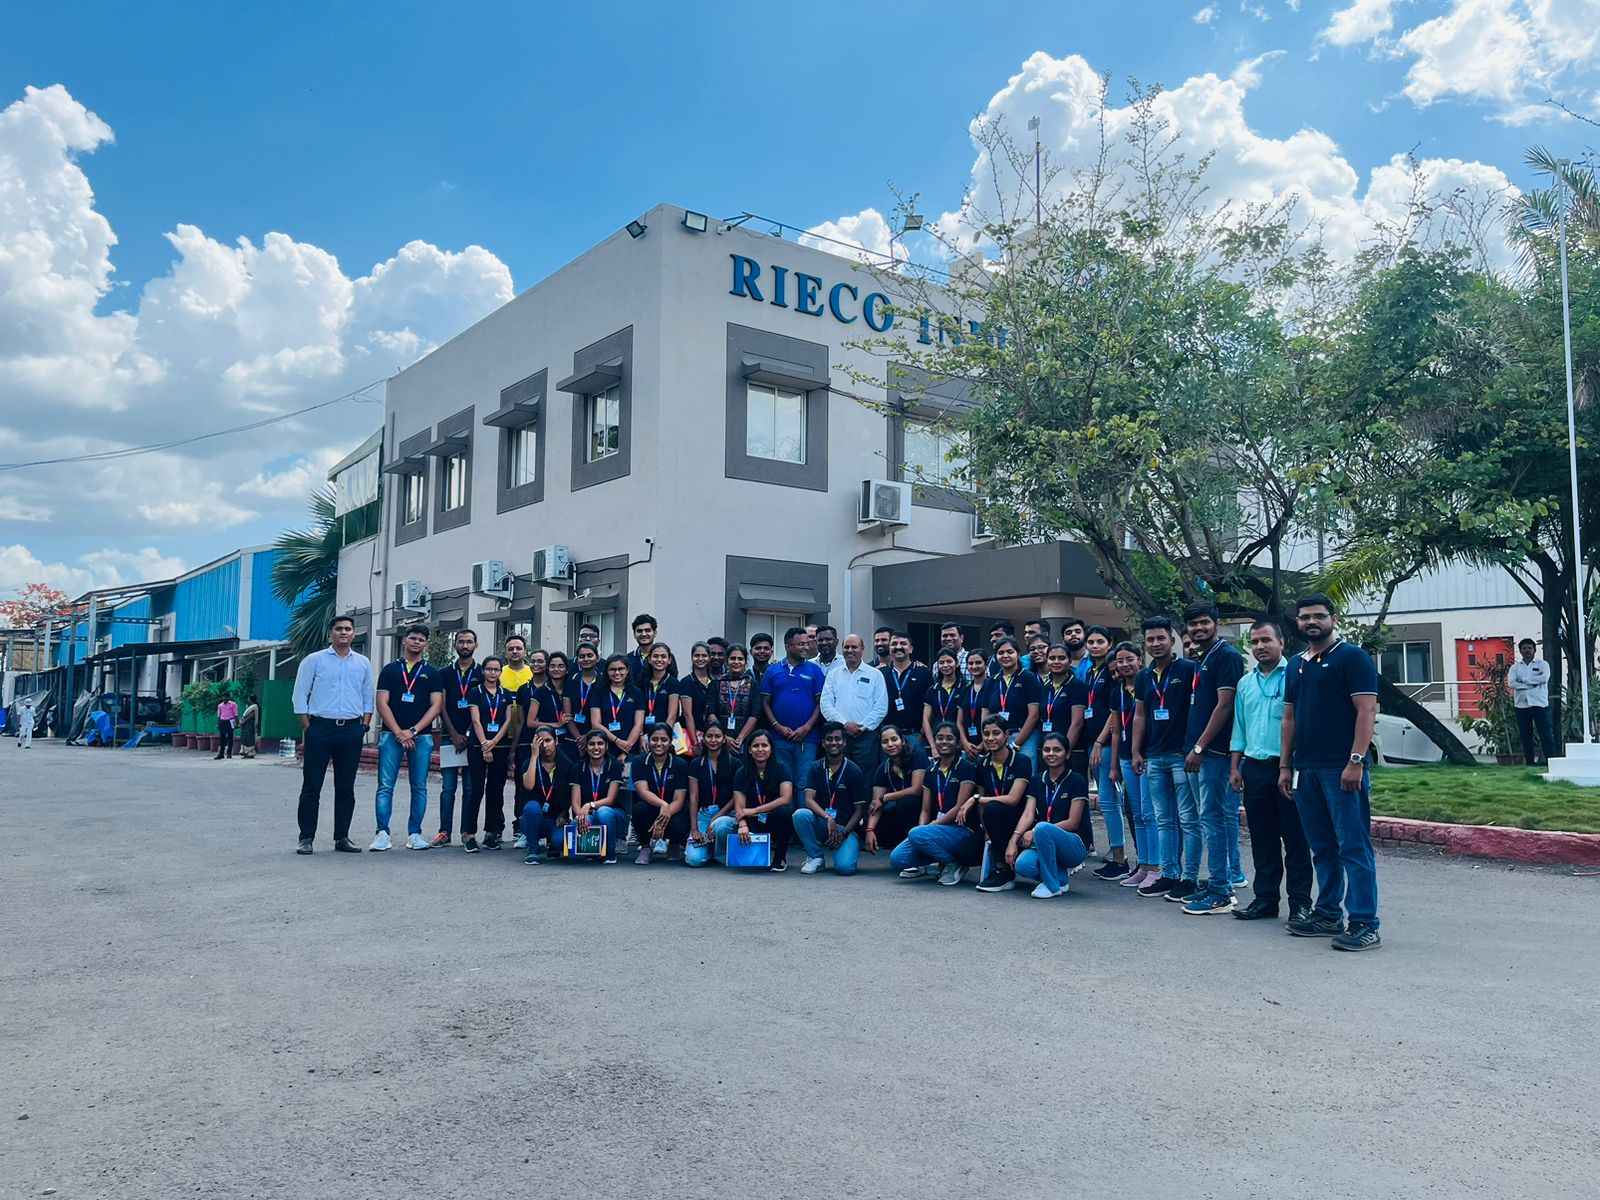 RIECO Industries Ltd